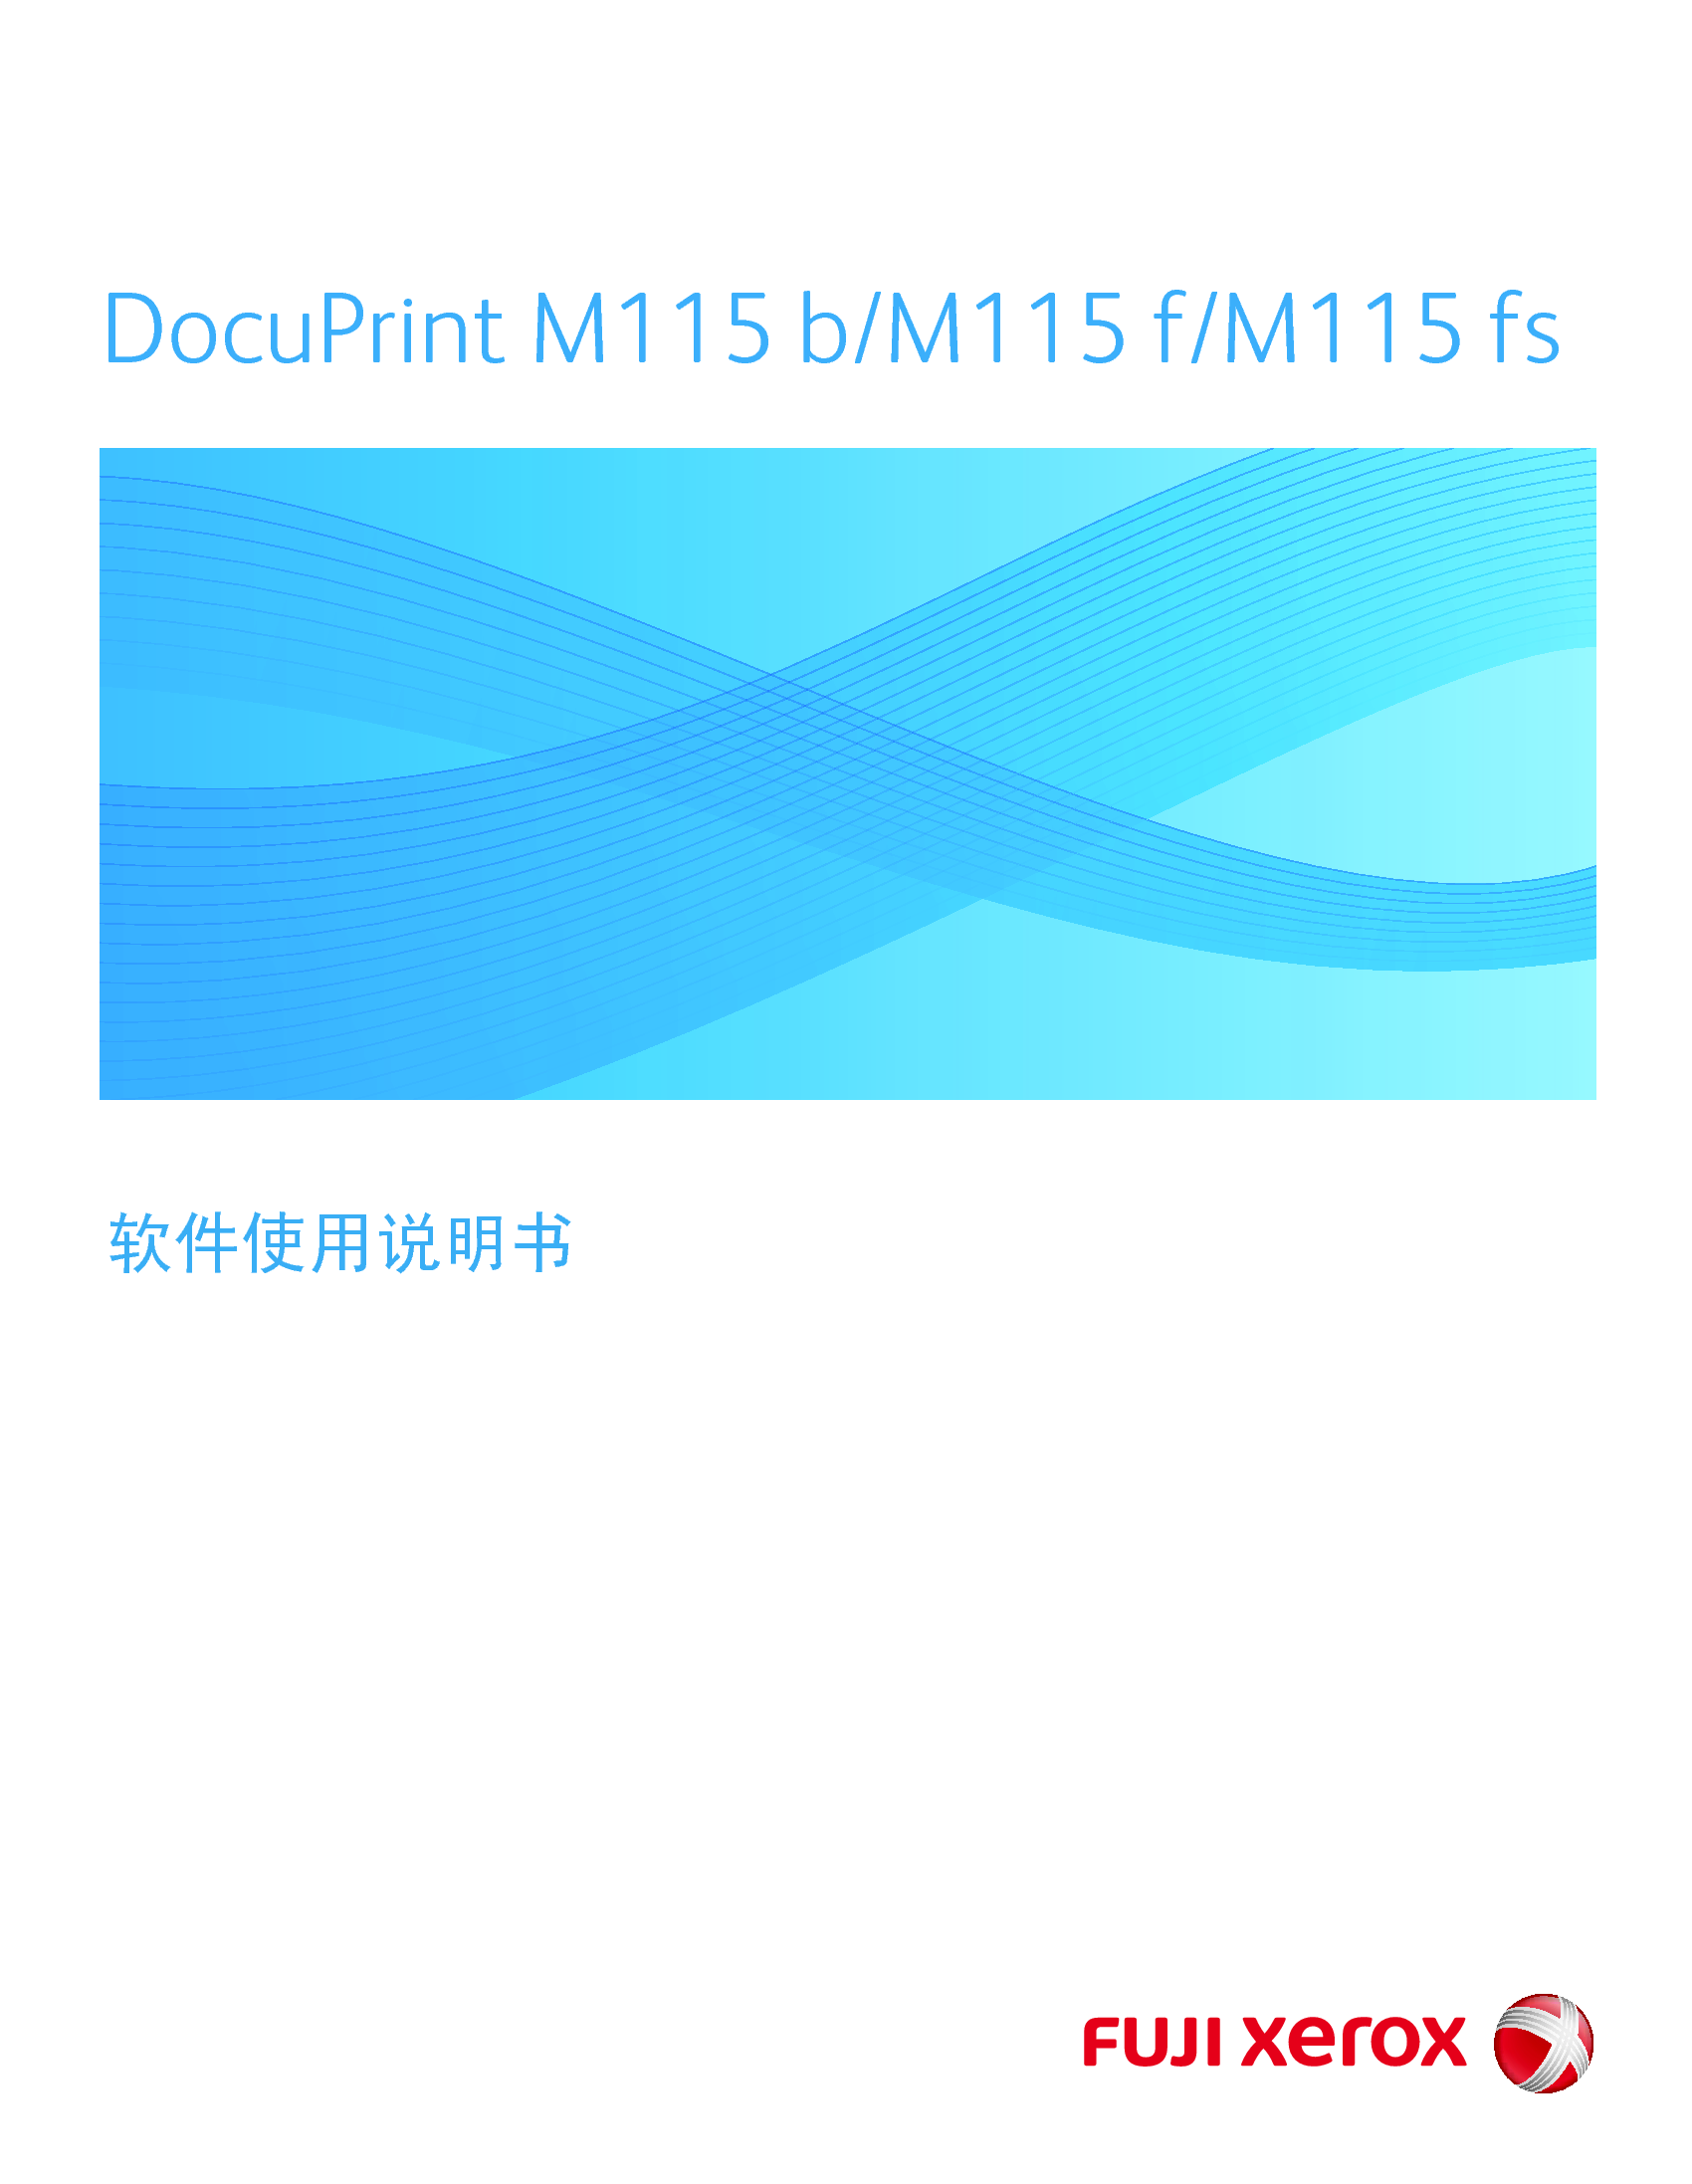 富士施乐 Fuji Xerox DocuPrint M115 b 软件 使用说明书 封面